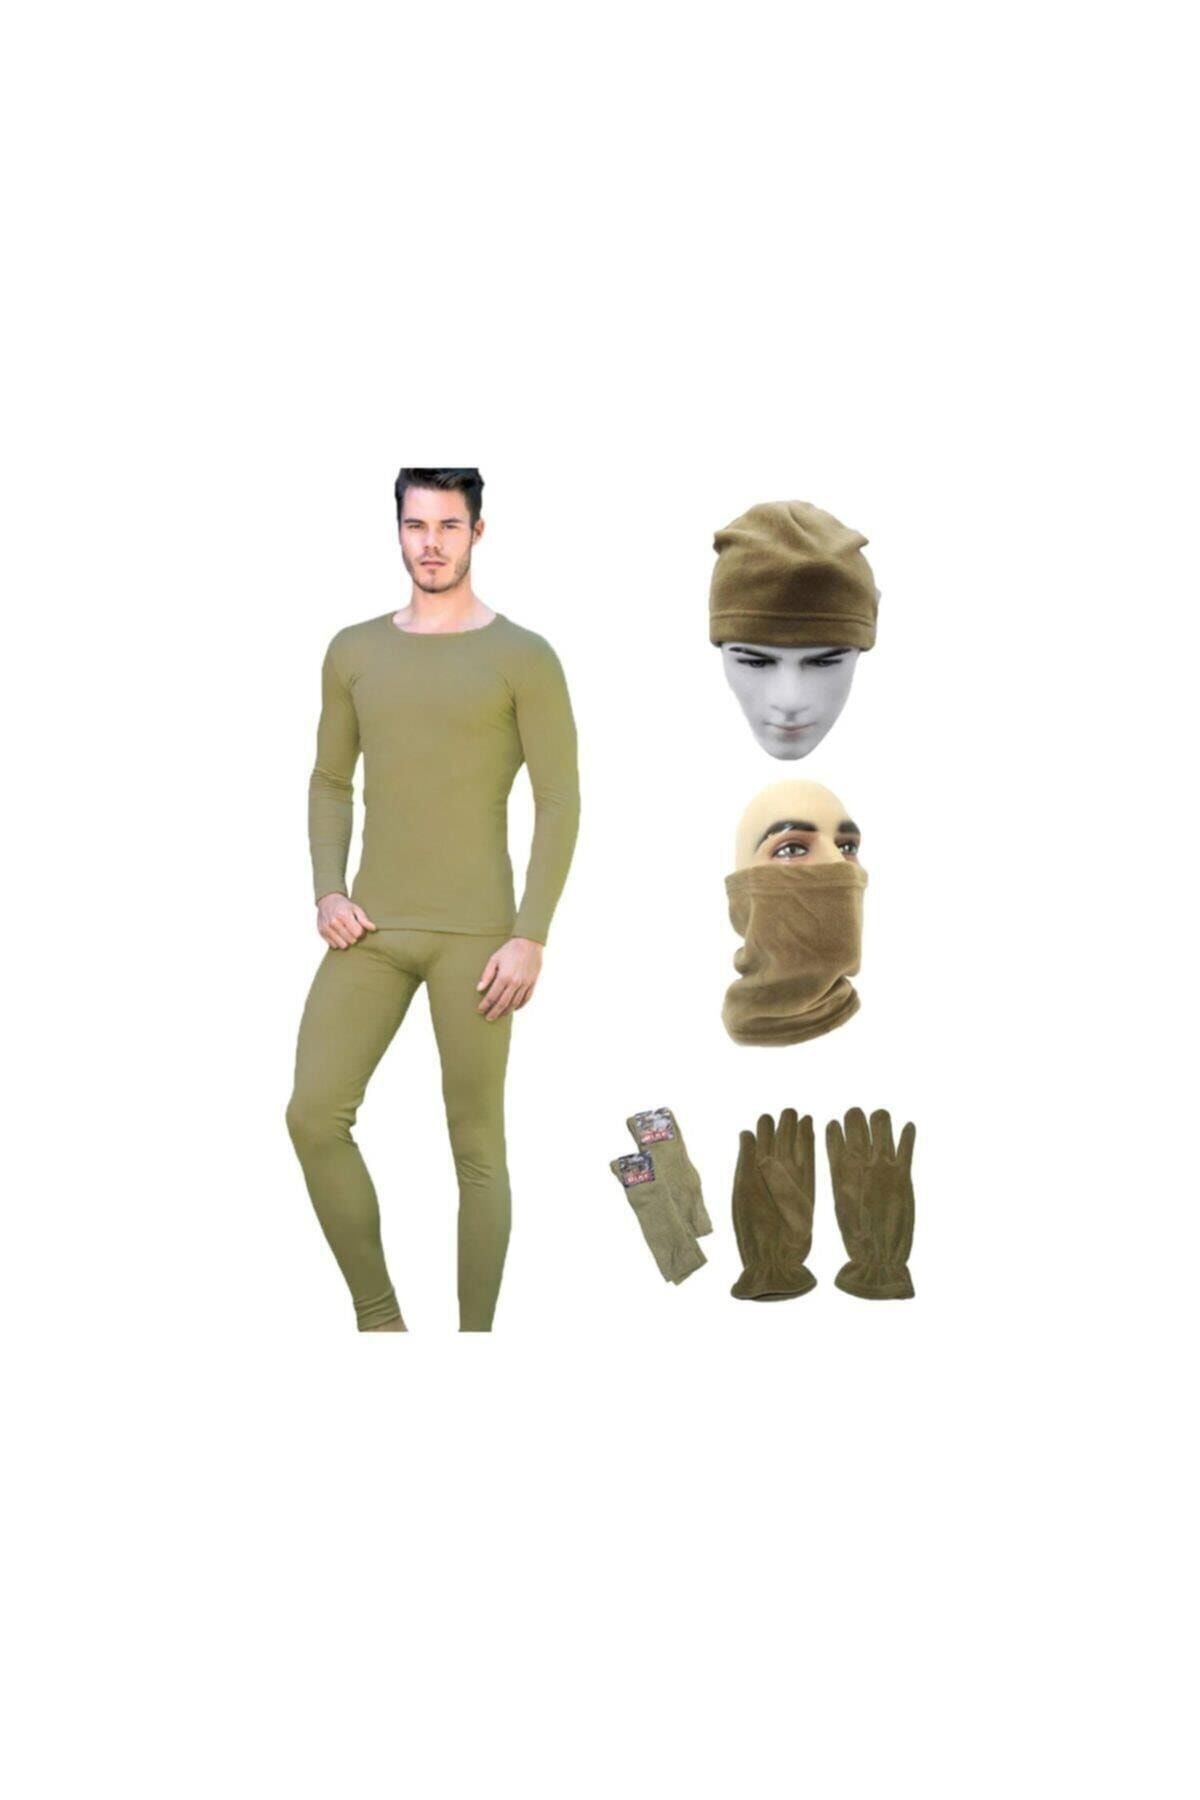 Silyon Askeri Giyim Termal Içlik Takımı & Bere & Boyunluk & Eldiven & Çorap Set Askeri Set